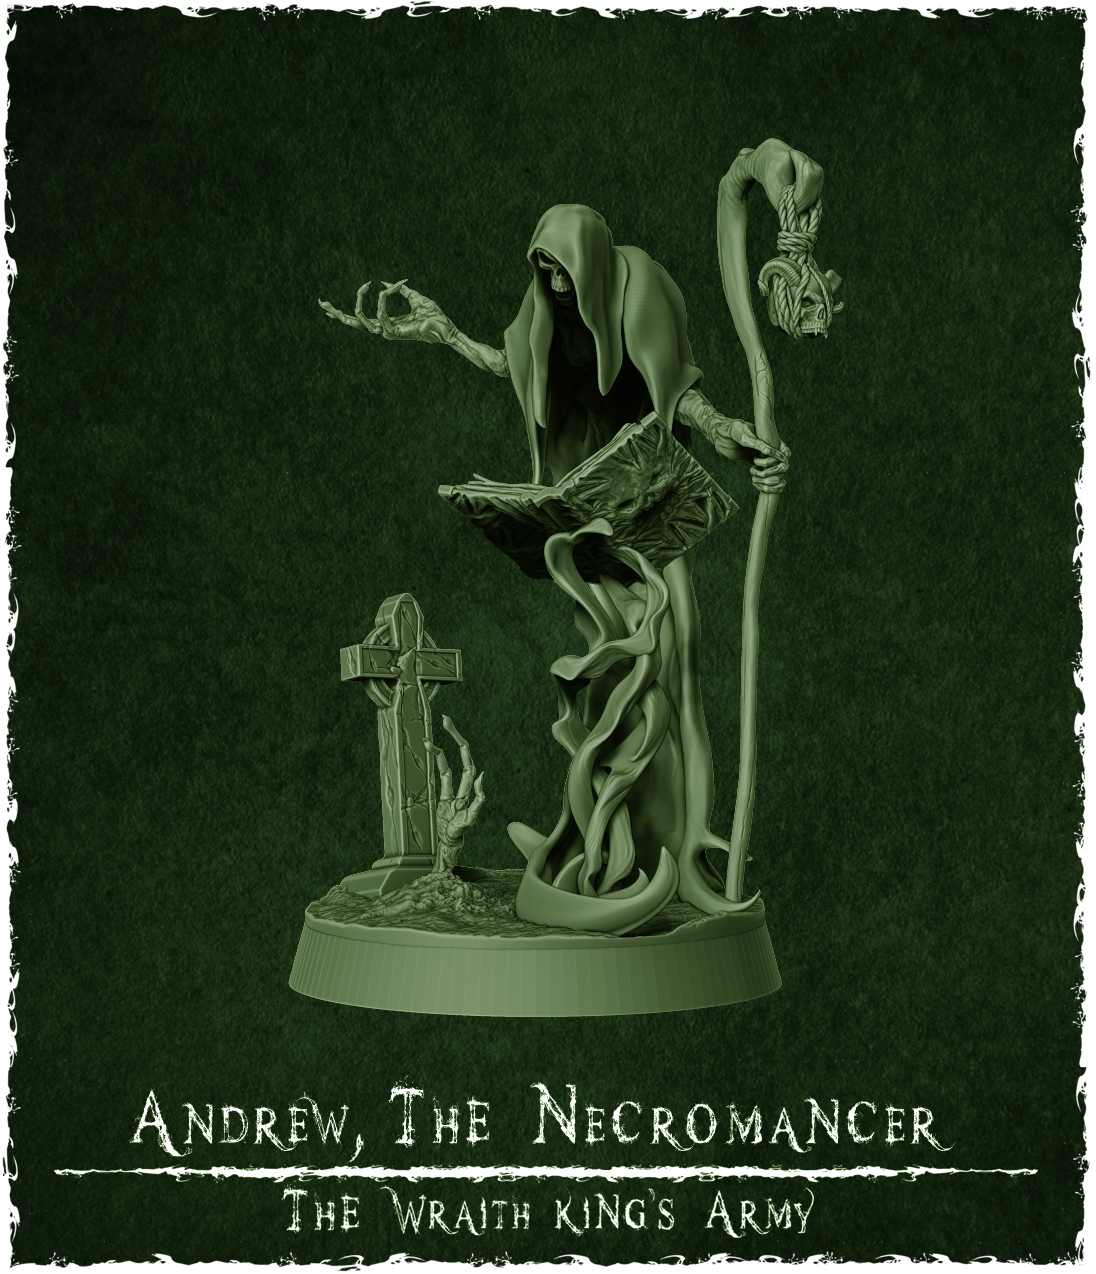 Andrew, the necromancer